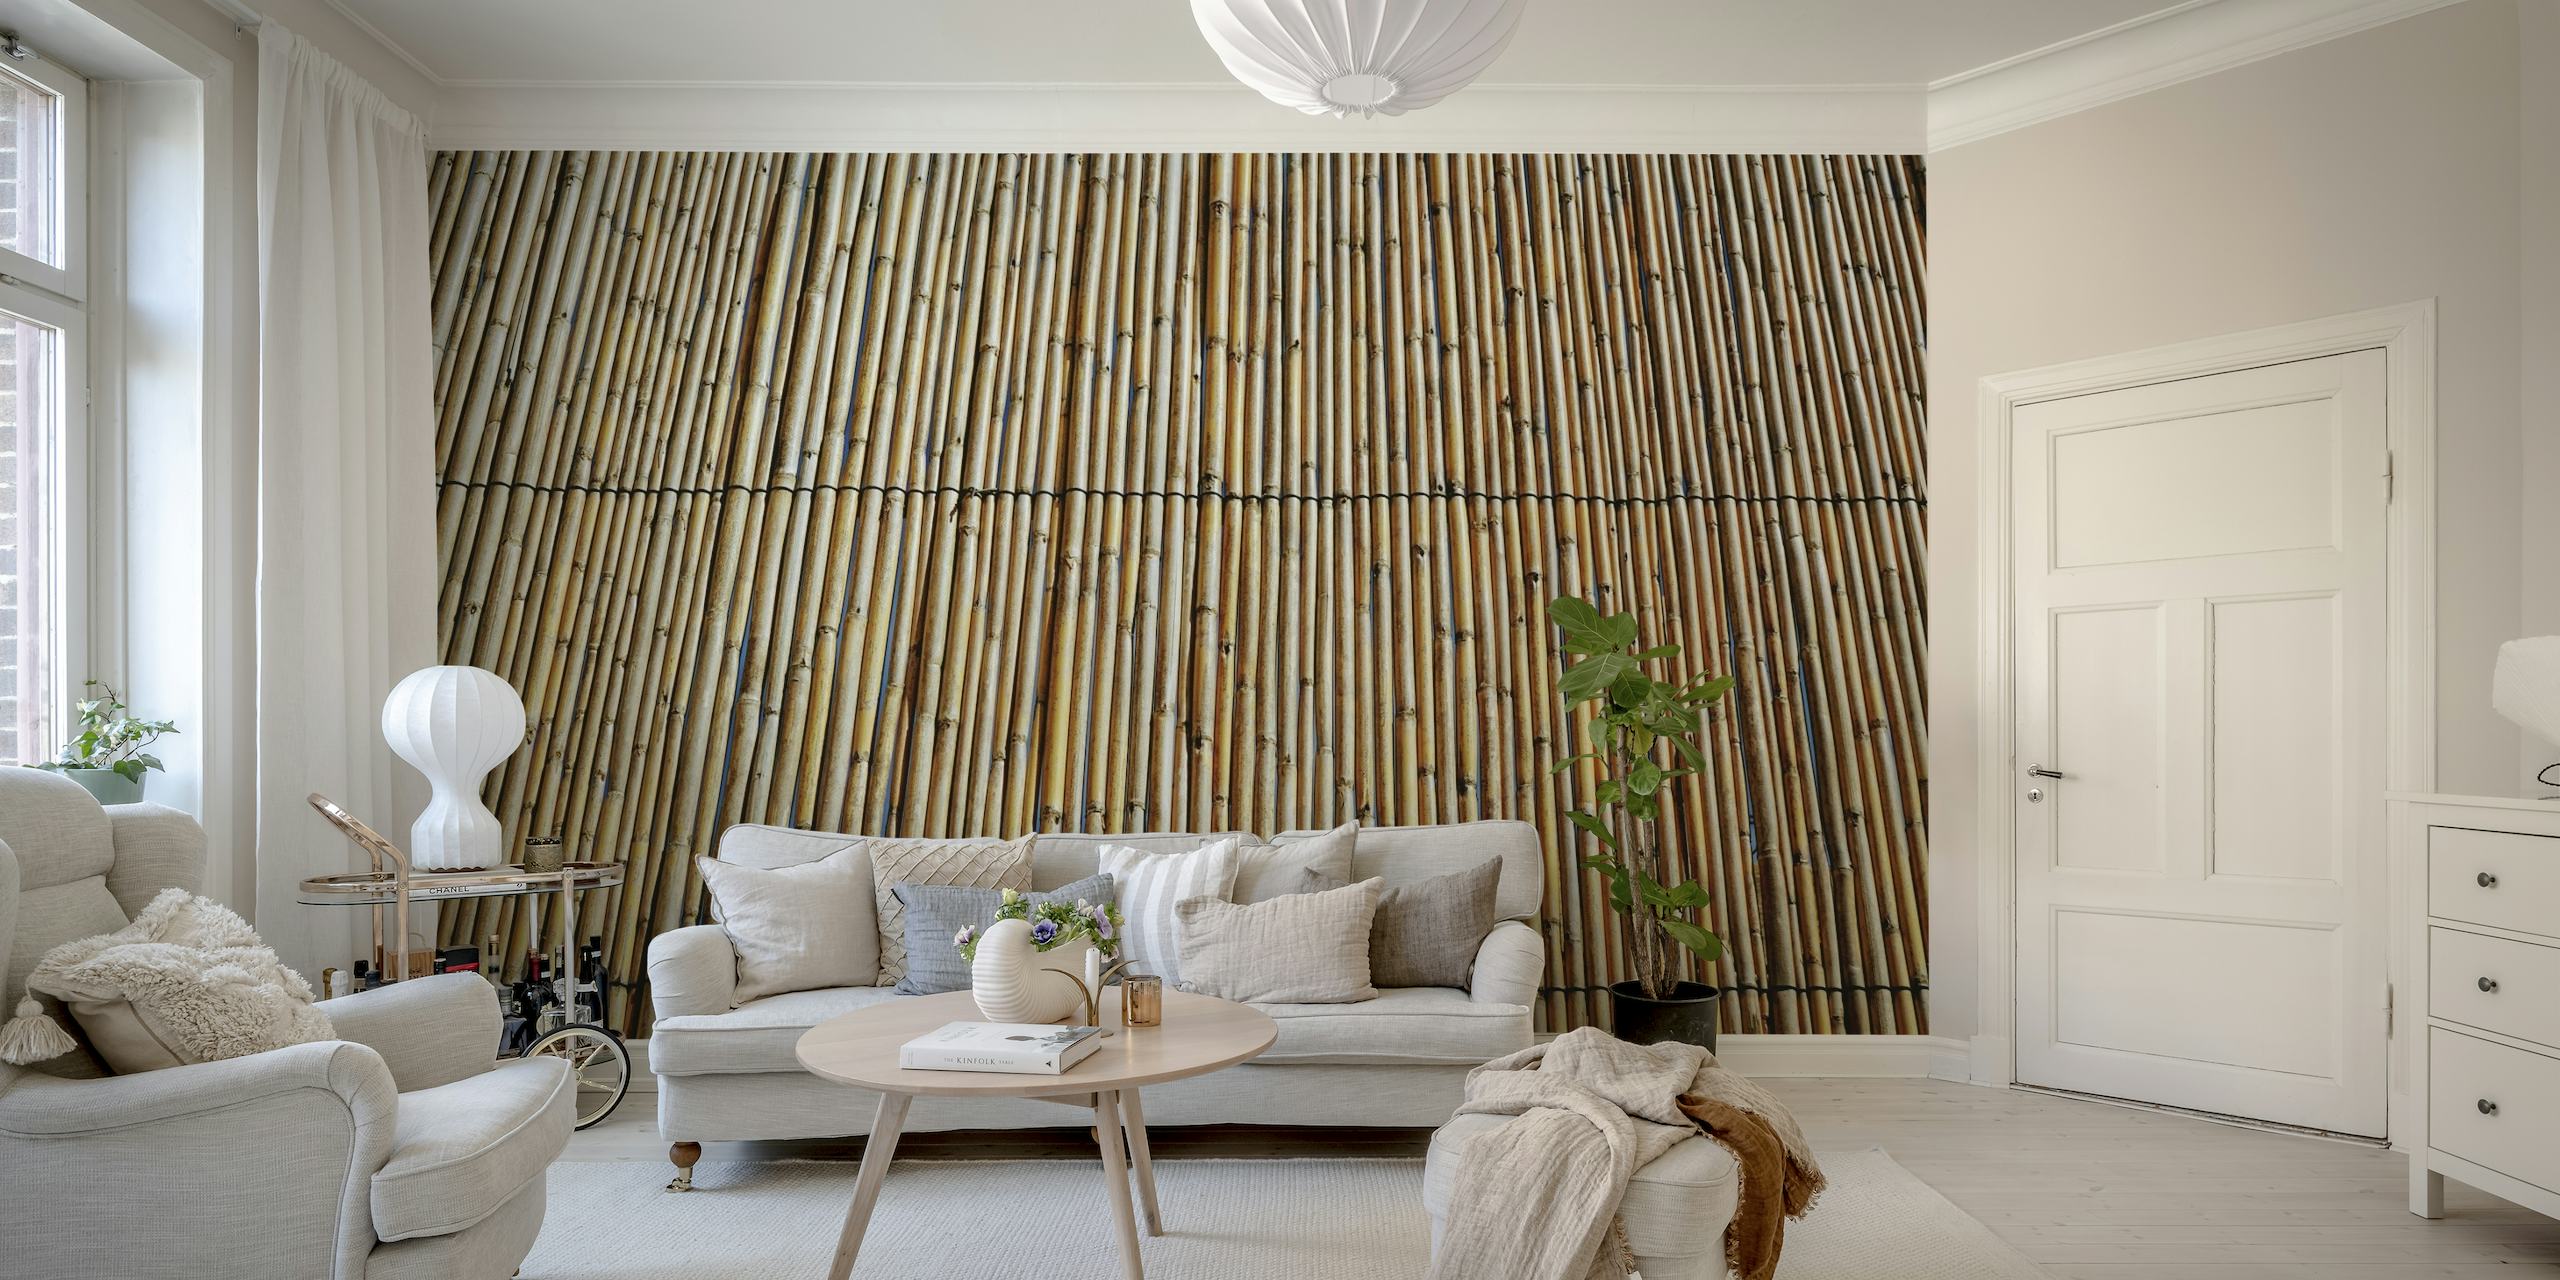 Wooden Bamboo Wall papel de parede